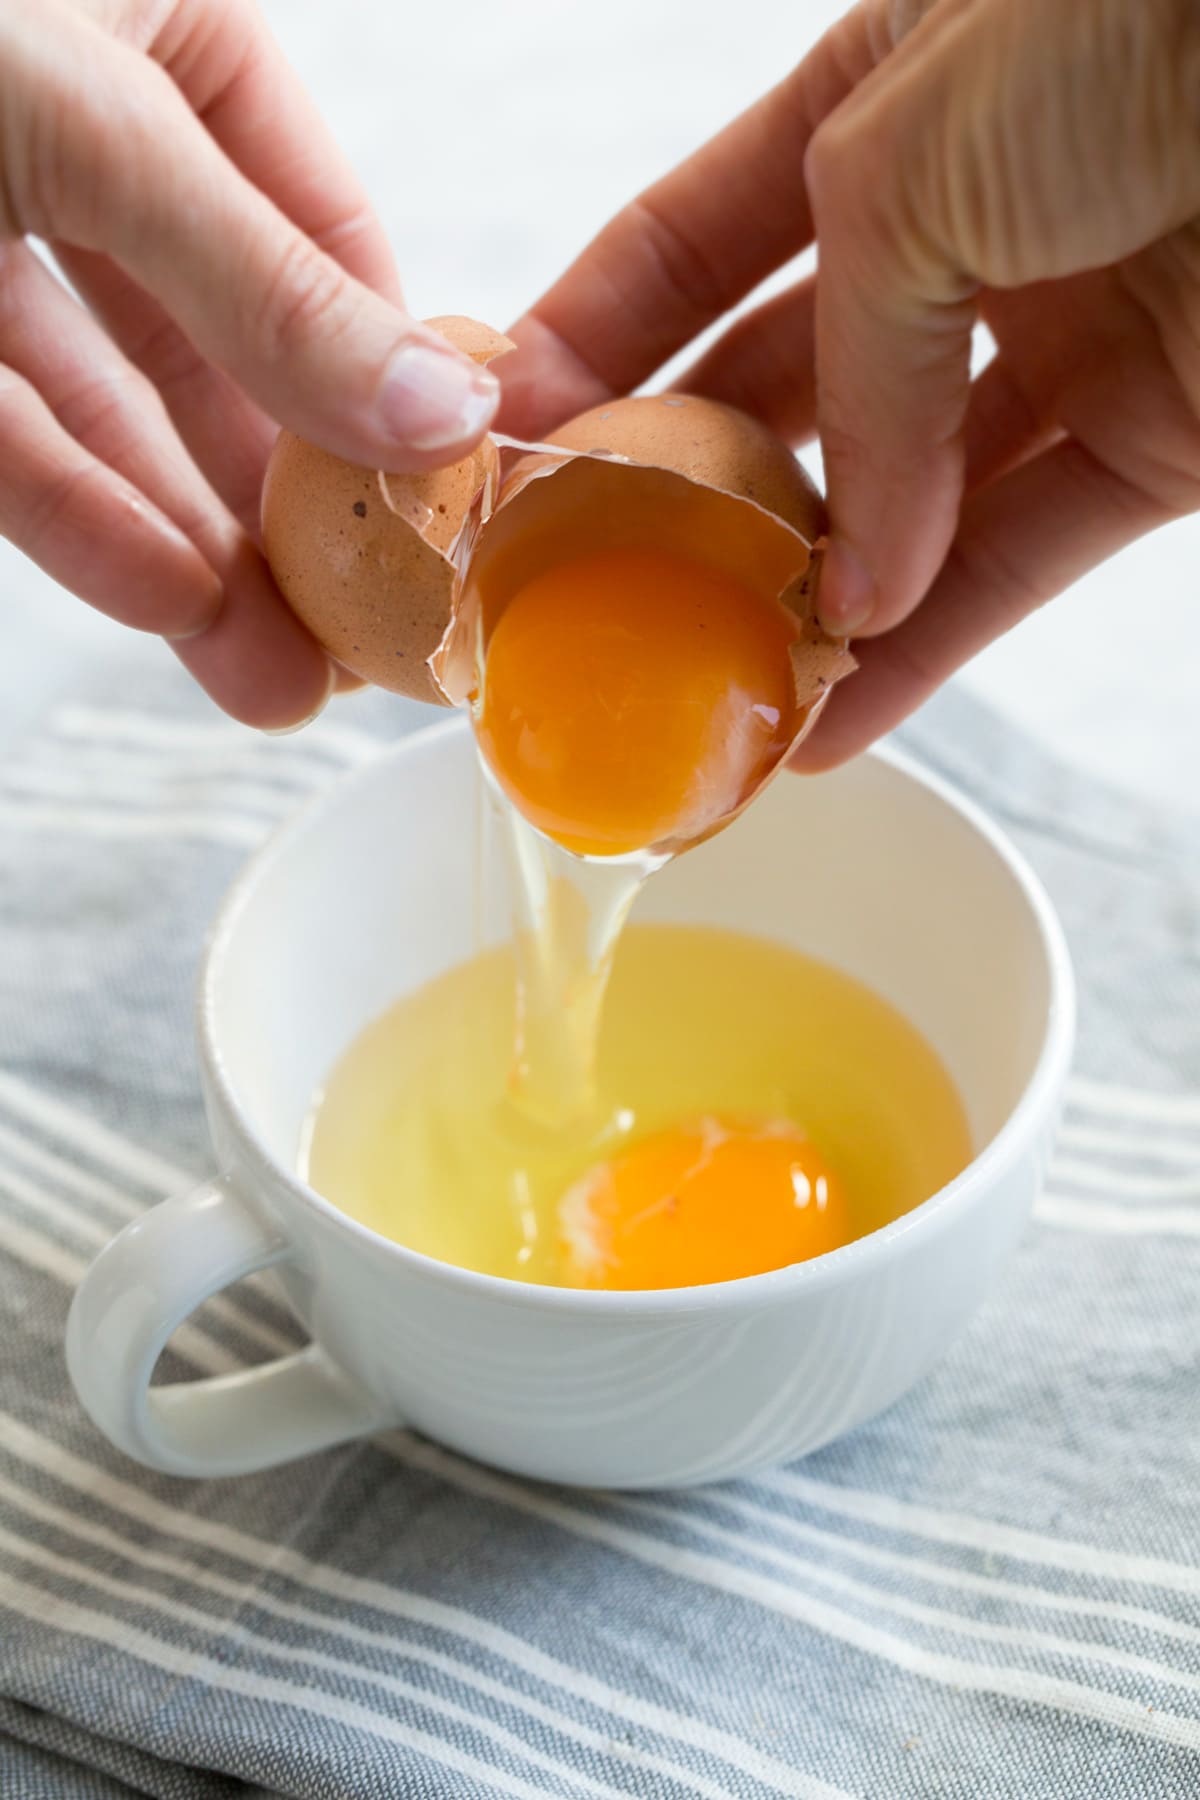 cracking egg into a mug